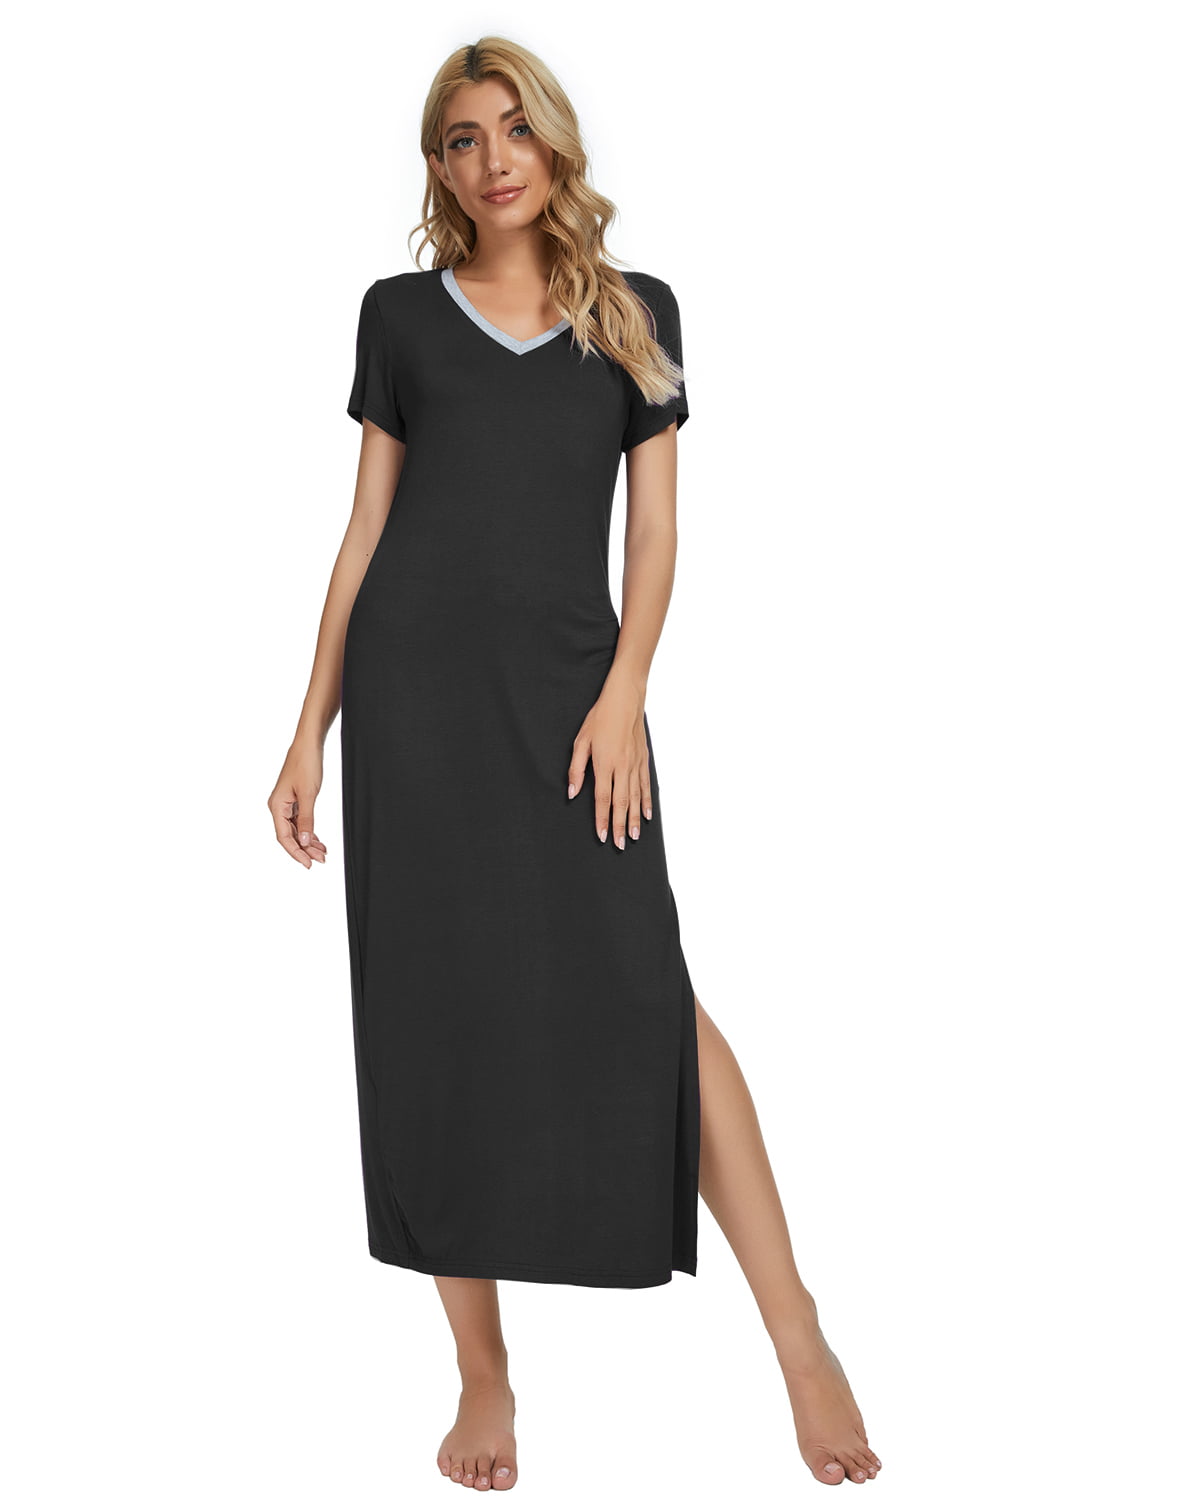 MintLimit Women's Long Nightgowns Loungewear Sleepwear Short Sleeve ...